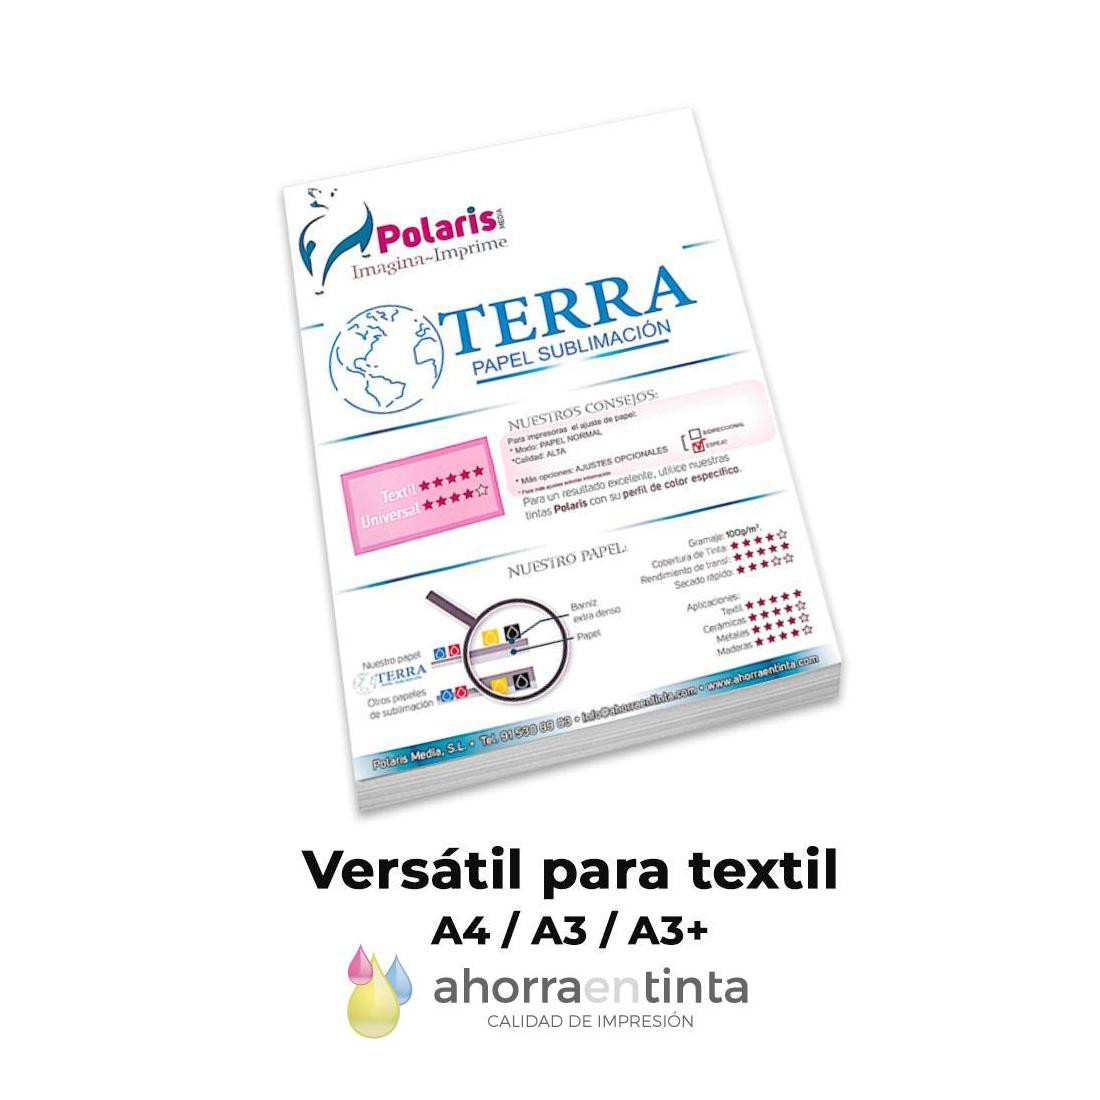 Papel Sublimación Polaris TERRA para textil 100gr, -secado rápido- Pack 100 hojas